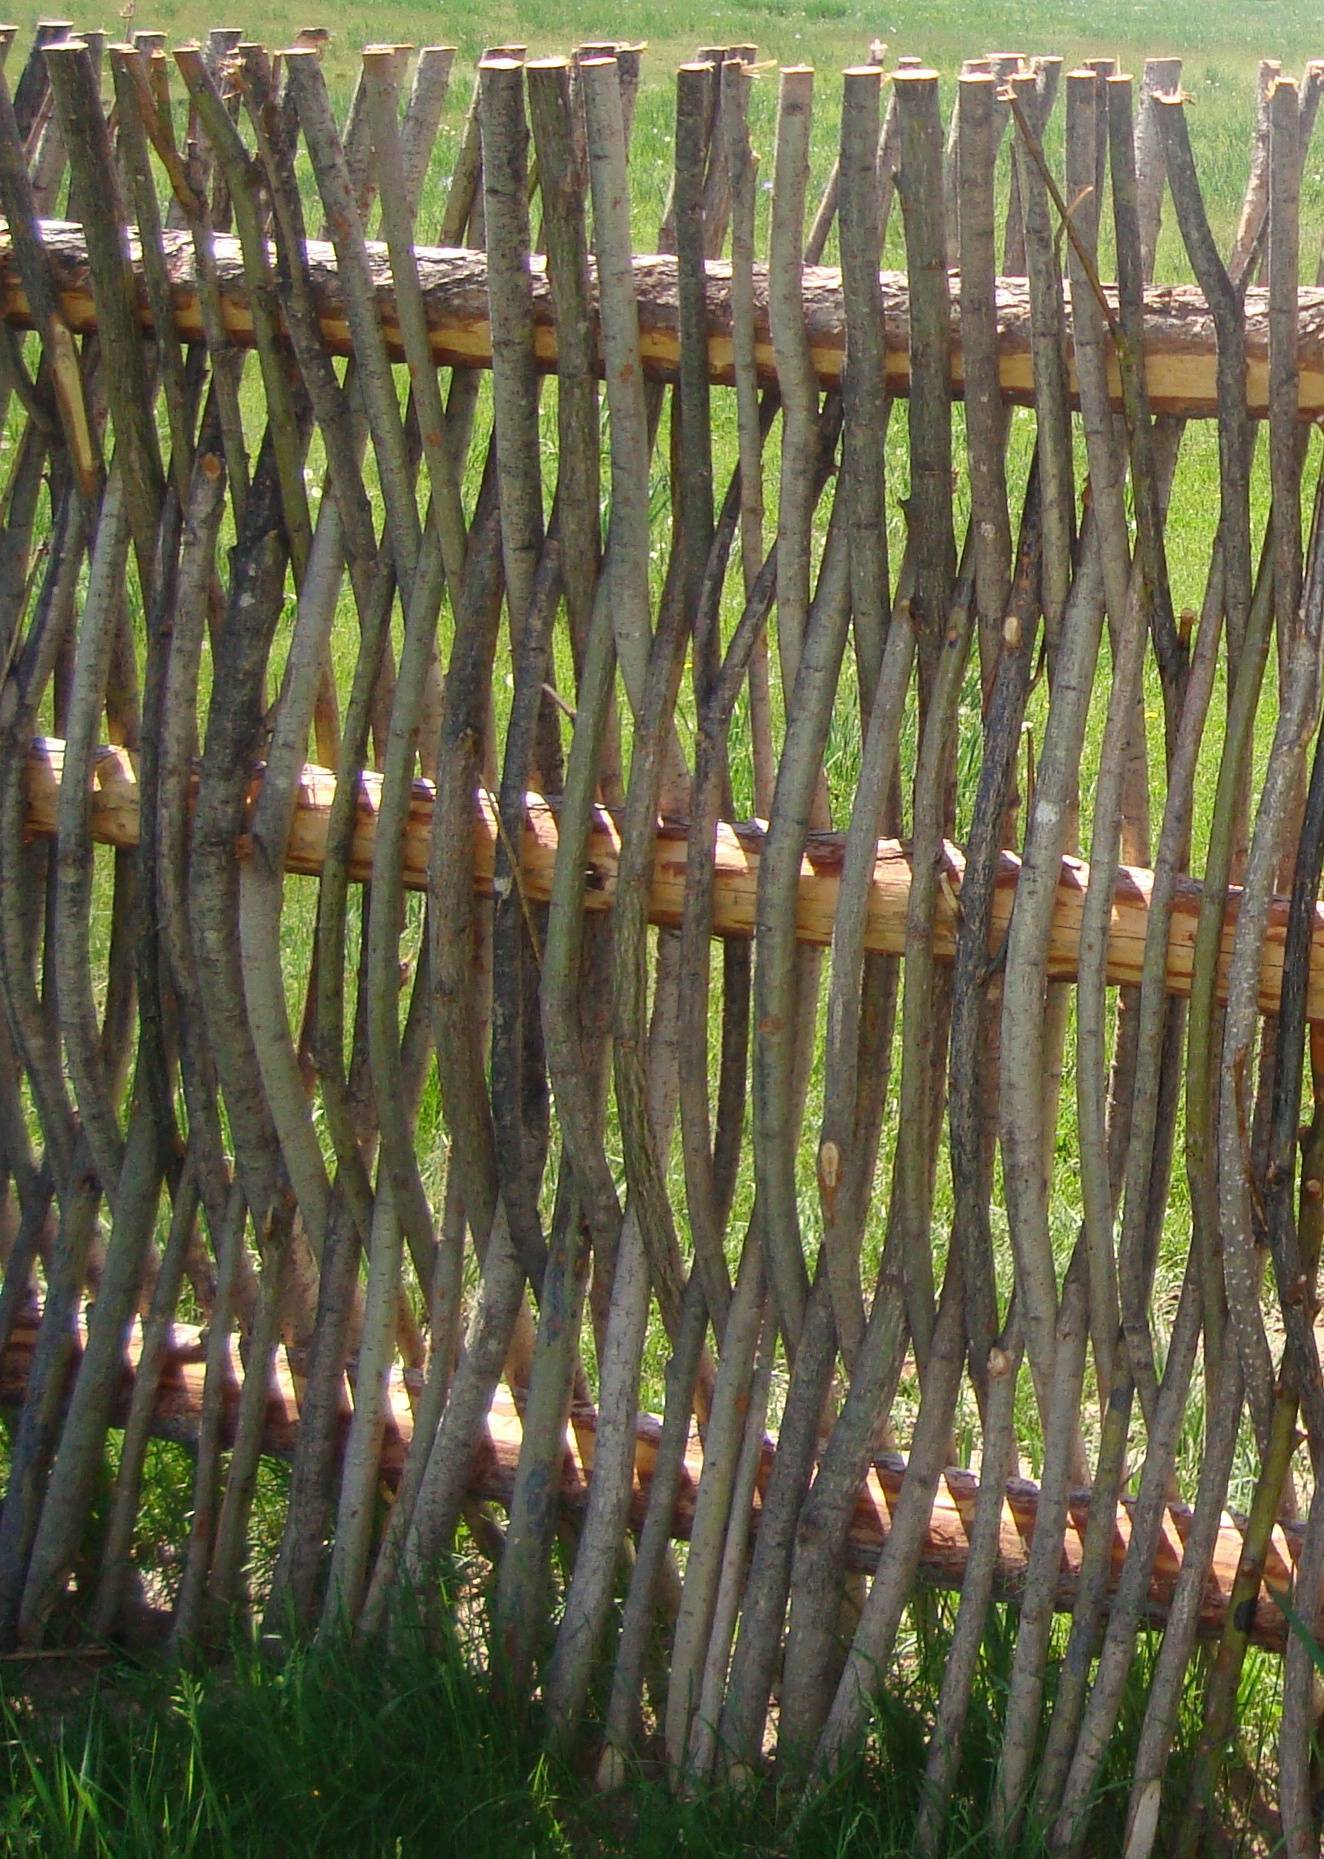 Деревянный плетеный забор из досок — самостоятельно и пошагово